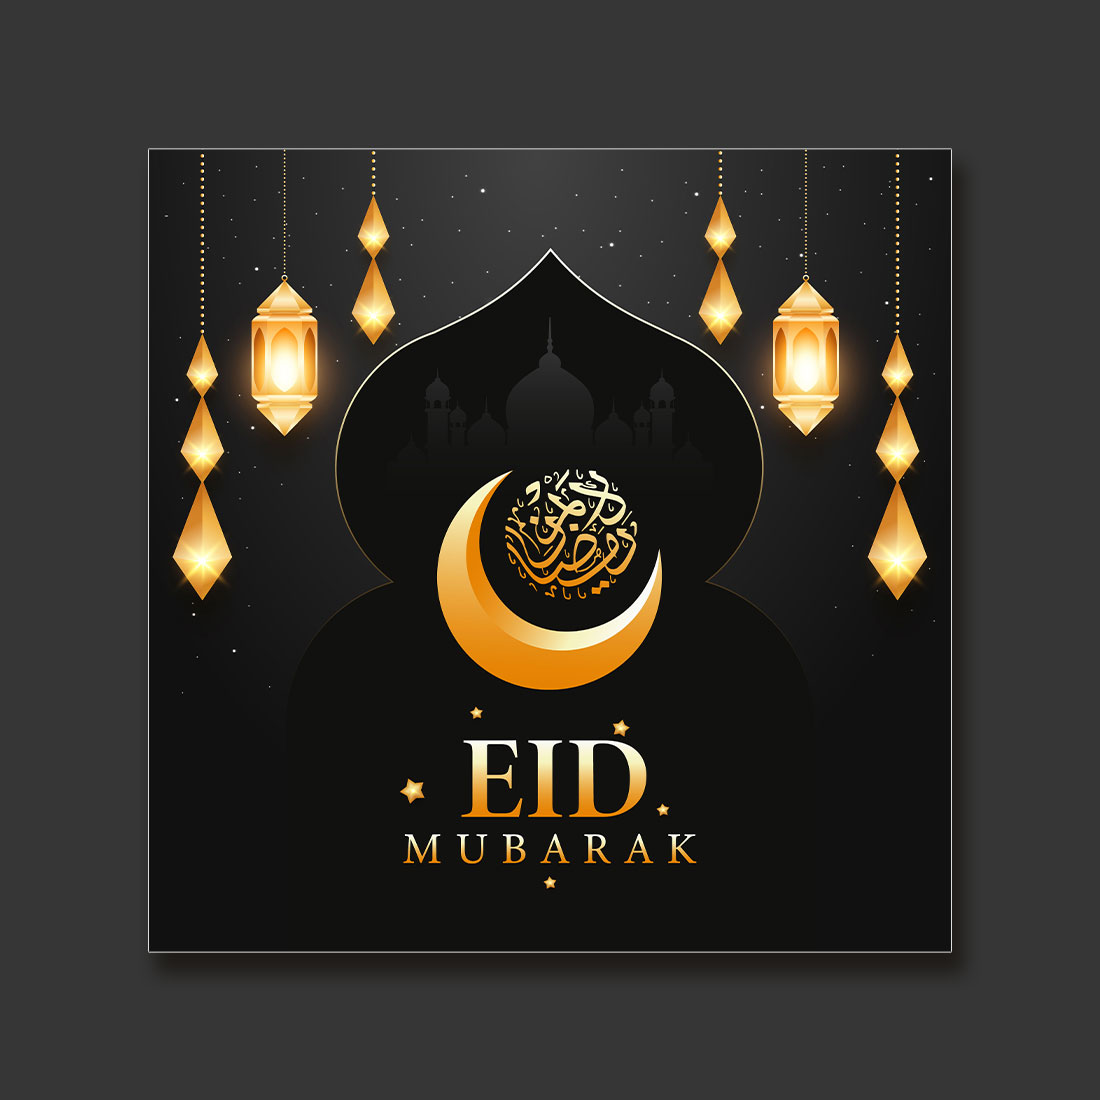 Eid Mubarak preview image.